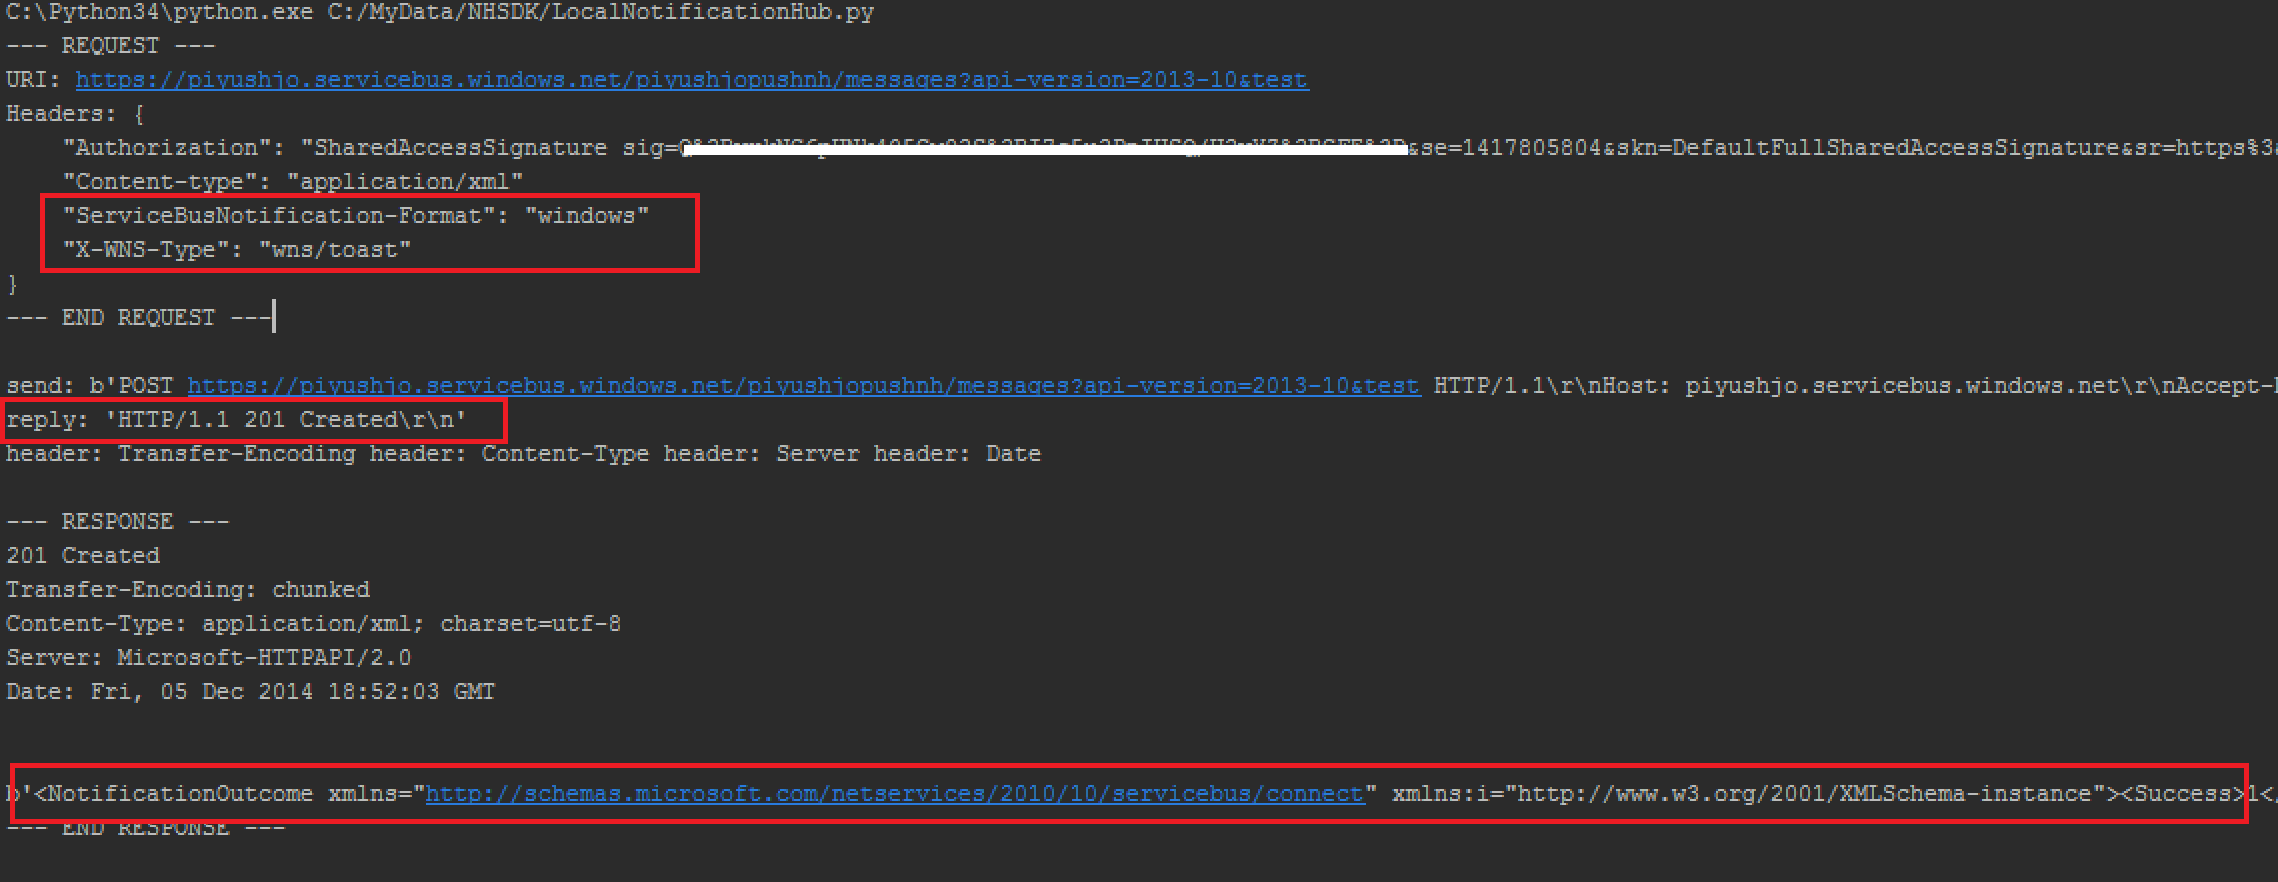 Captura de pantalla de una consola con detalles de los mensajes de salida de solicitud y respuesta de HTTP y resultado de notificación resaltados en rojo.